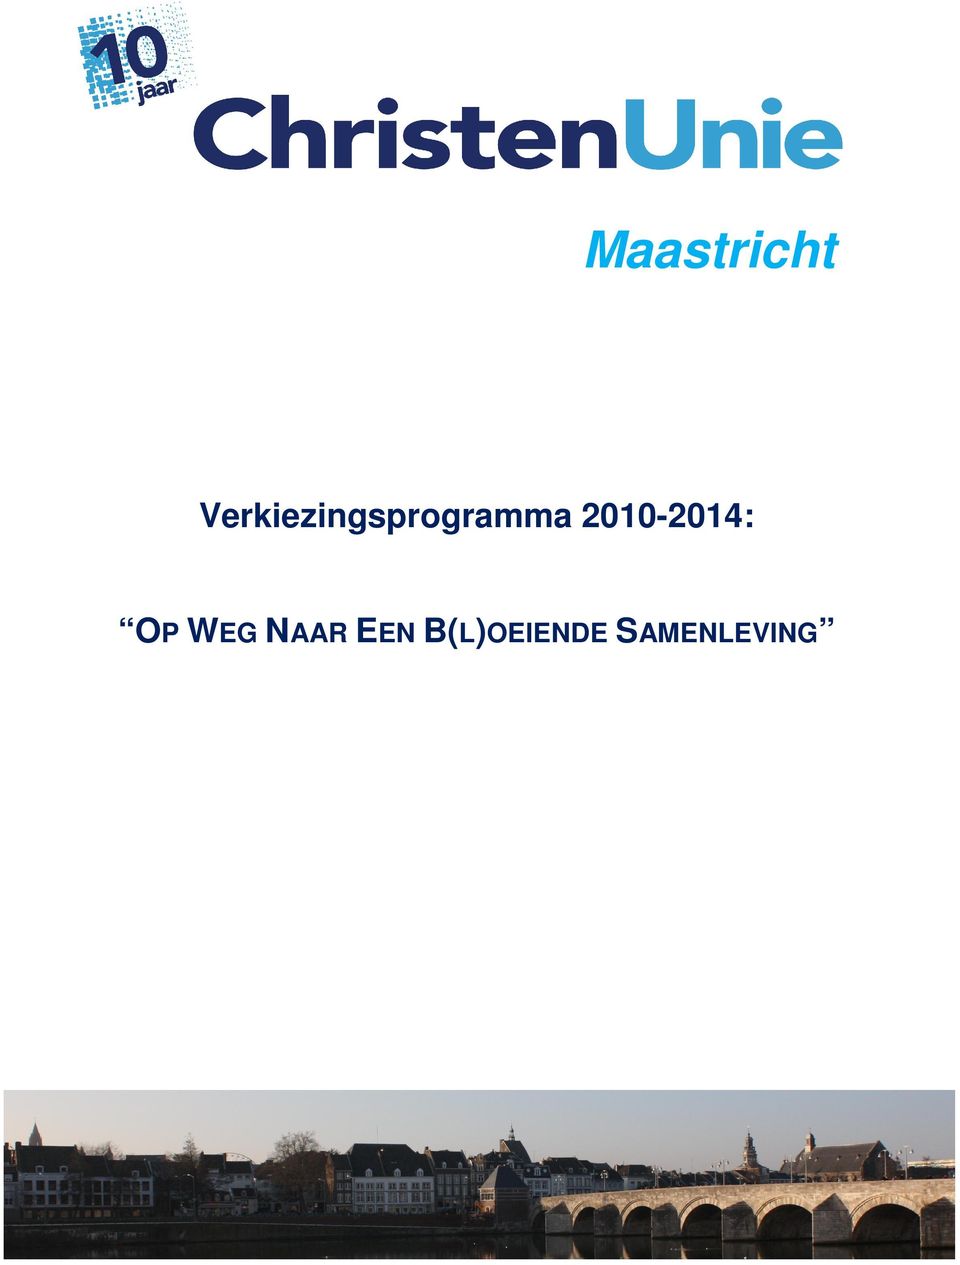 2010-2014: OP WEG